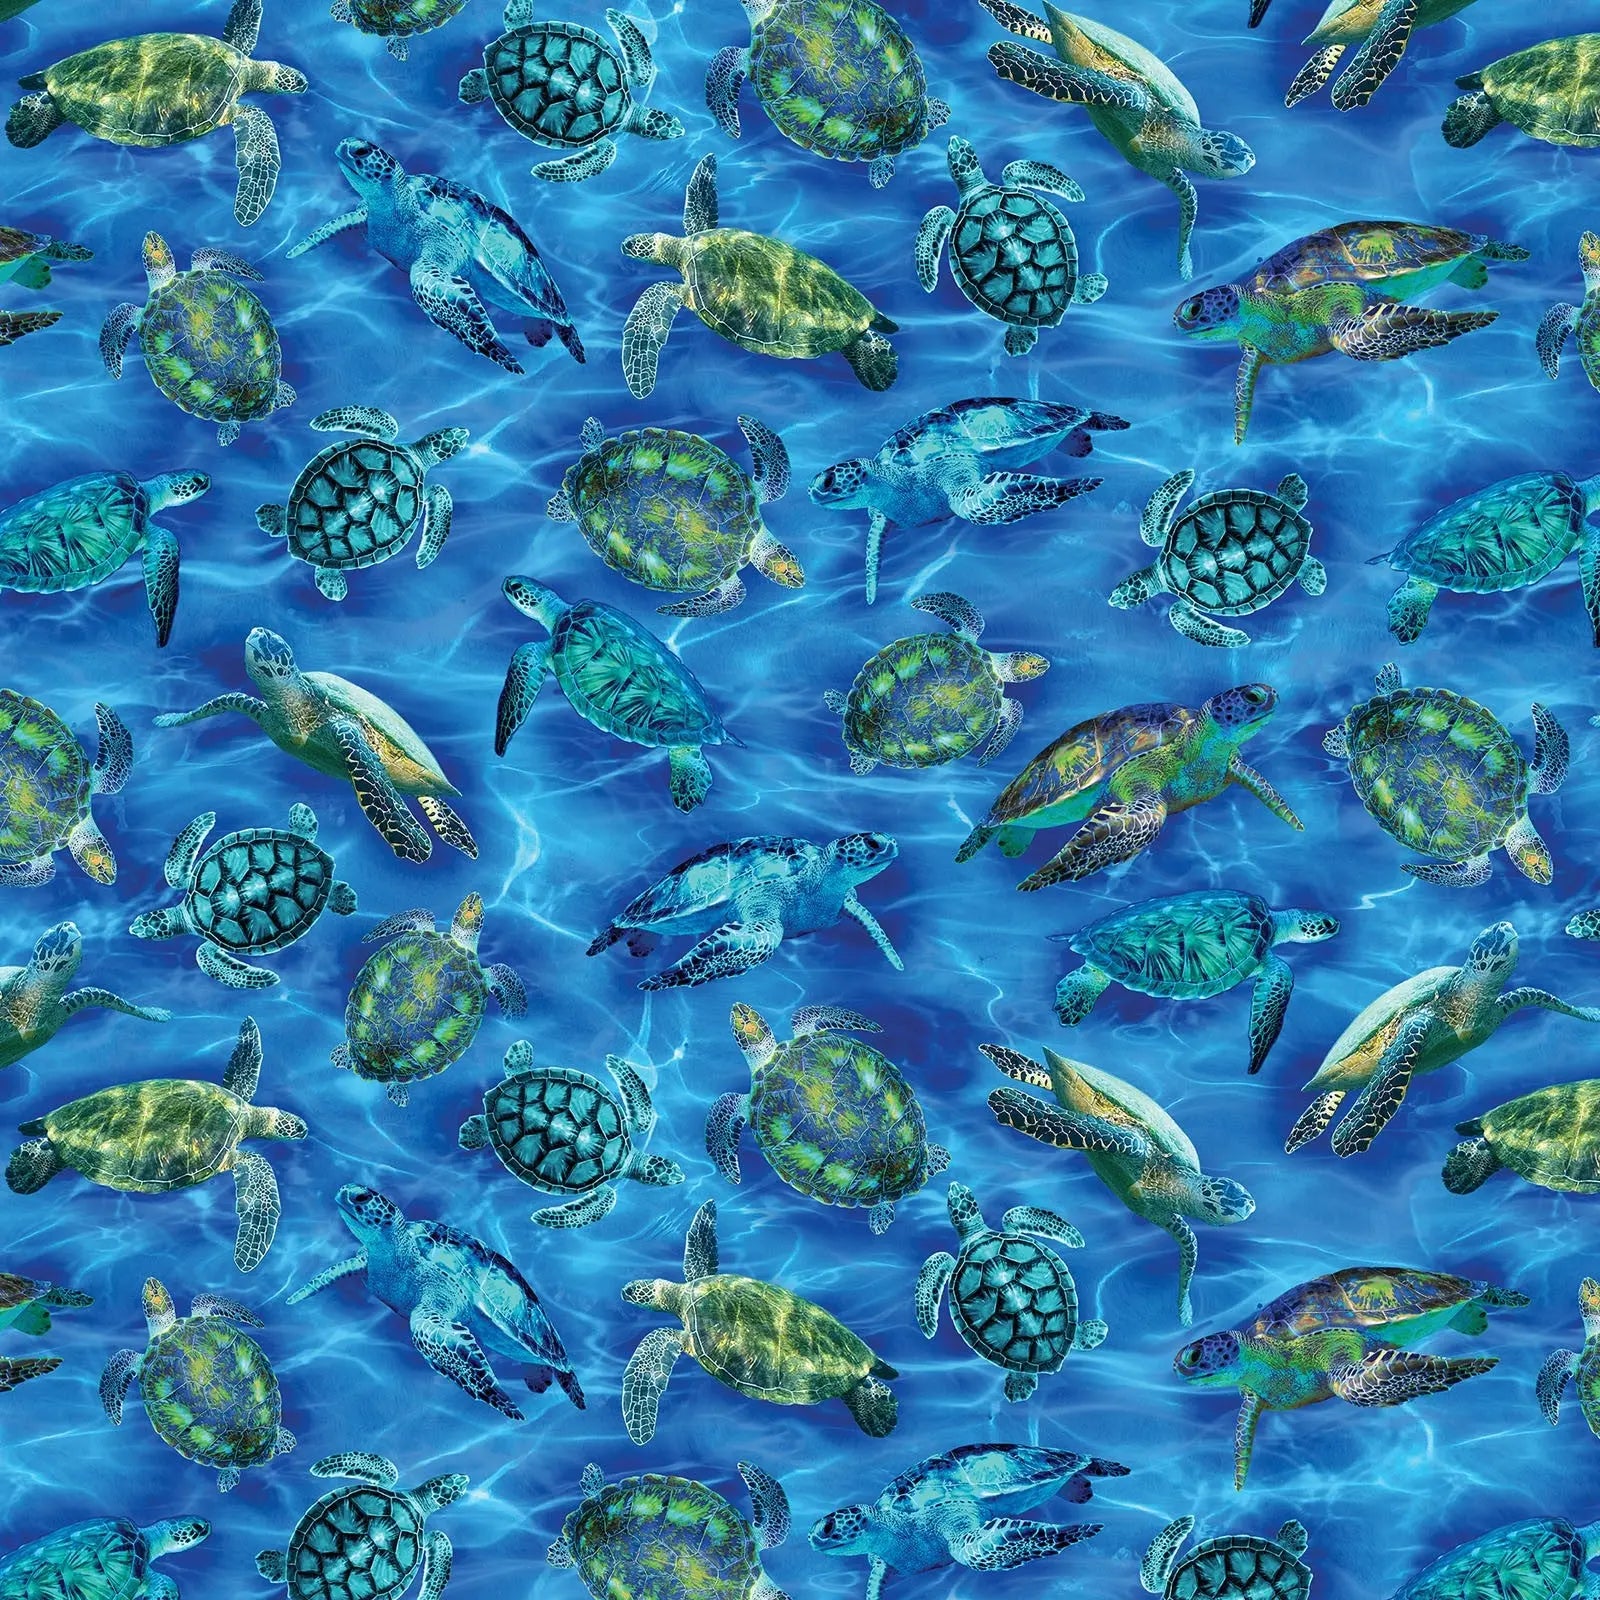 Sea turtles in the ocean wideback fabric.